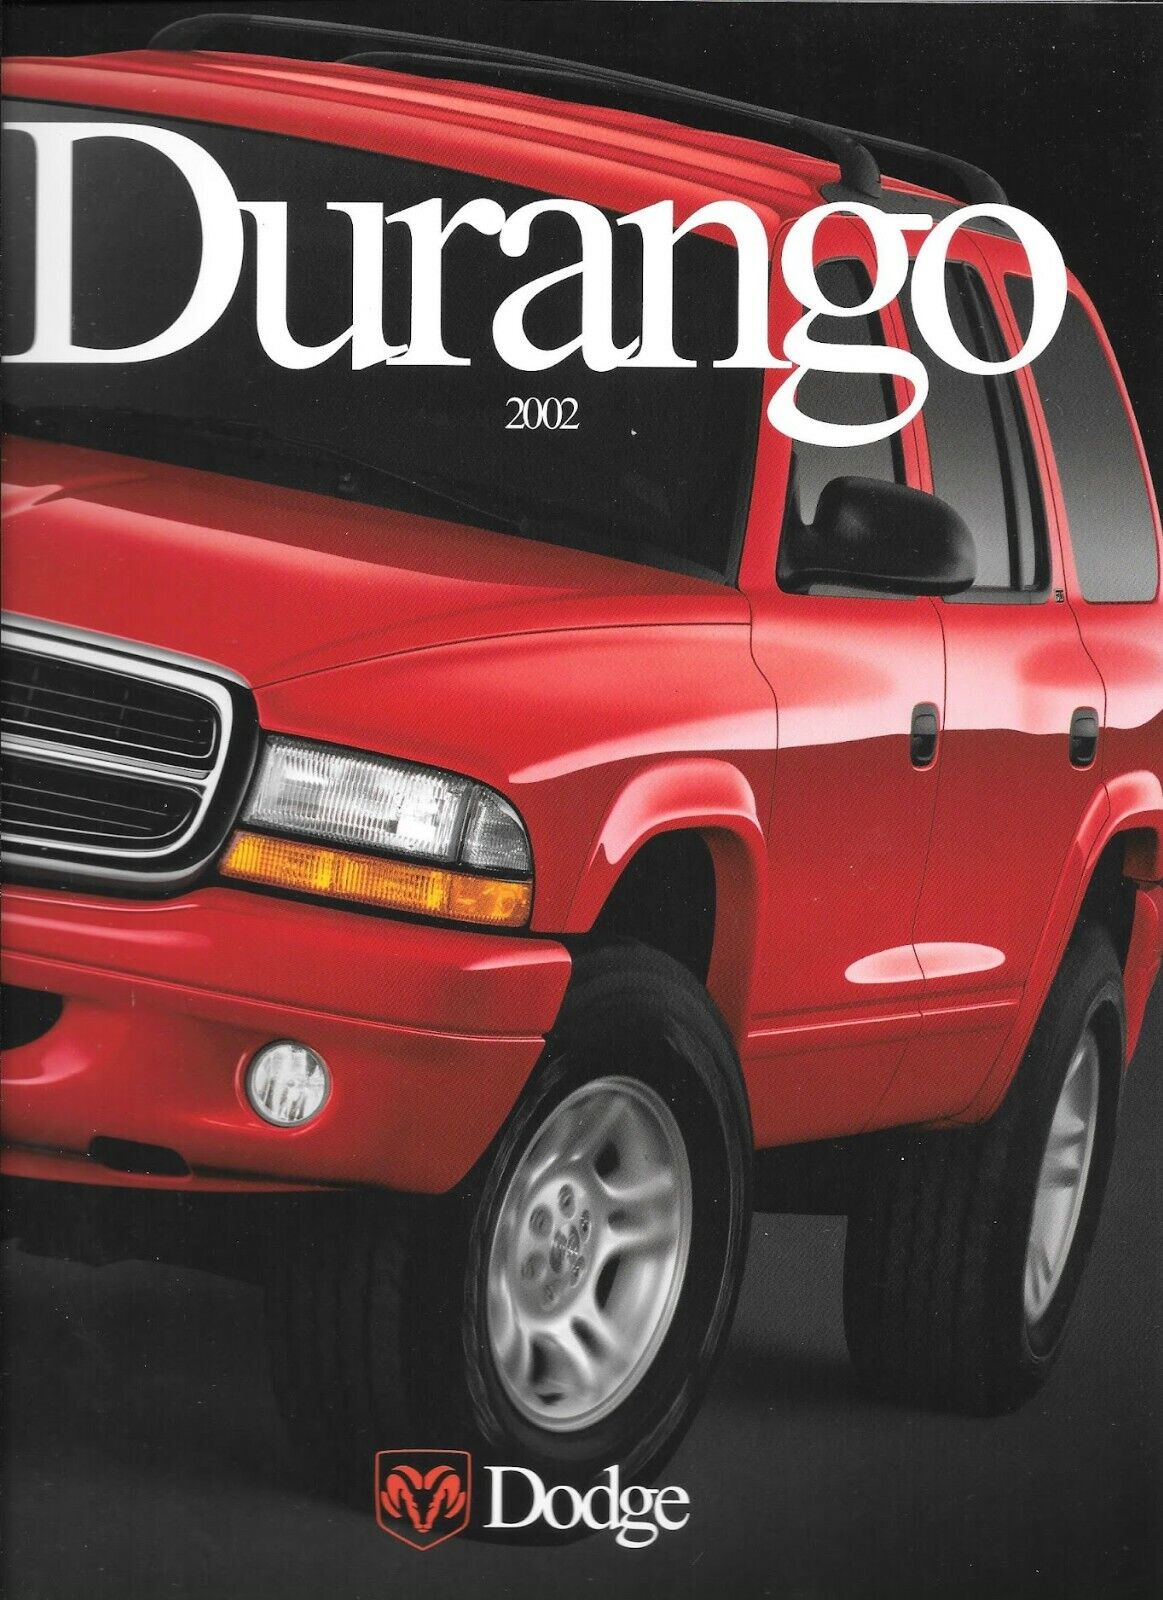 New 2002 Dodge Durango Dealership Sales Brochure 5.9L V8 4x4 SUV 30 pages  color | eBay